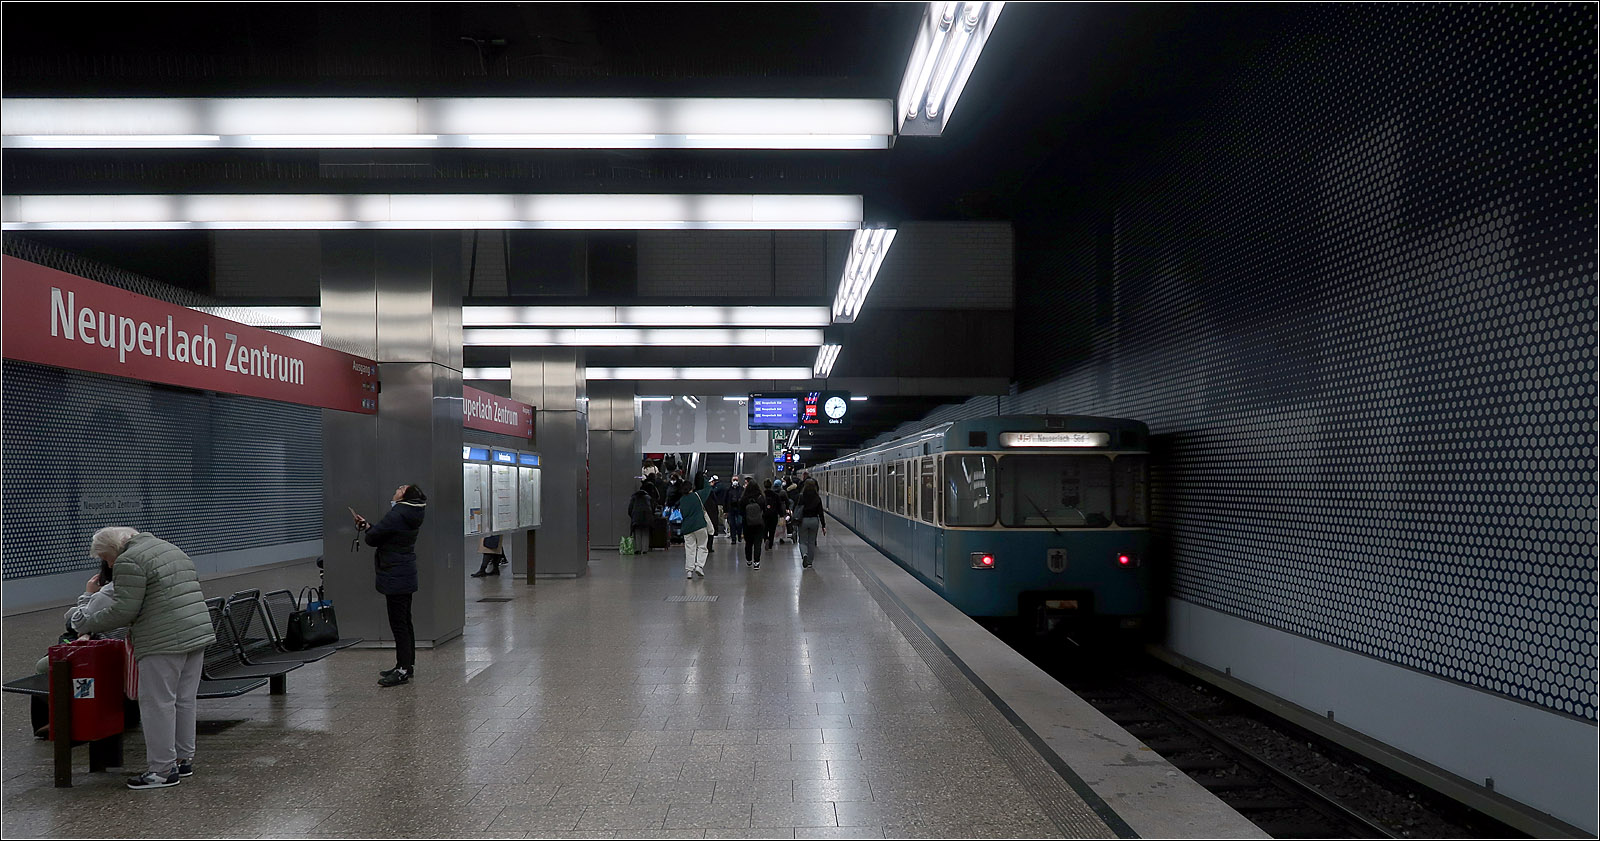 Aufgefrischt - 

... werden bei der Münchner U-Bahn derzeit auch Stationen der 1980 eröffneten Strecke vom Scheidplatz über Hauptbahnhof, Sendlinger Tor und Innsbrucker Ring nach Neuperlach-Süd. Diese Strecke mit insgesamt 18 Bahnhöfen ist die längste U-Bahnstrecke, die je in Deutschland auf einen Schlag eröffnet wurde. Nur der Endbahnhof Neuperlach-Süd liegt oberirdisch.

Im Bild die schon modernisierte Station 'Neuperlach-Zentrum,' mit neuen Verkleidungen der Hintergleiswänden. Ursprünglich hatte man vom mittig angeordneten Zwischengeschoss Blickverbindung zum hier recht breiten Bahnsteig. Diese galerieartige Öffnung wurde aus brandschutztechnischen Gründen inzwischen leider zugemauert.

09.11.2022 (M)